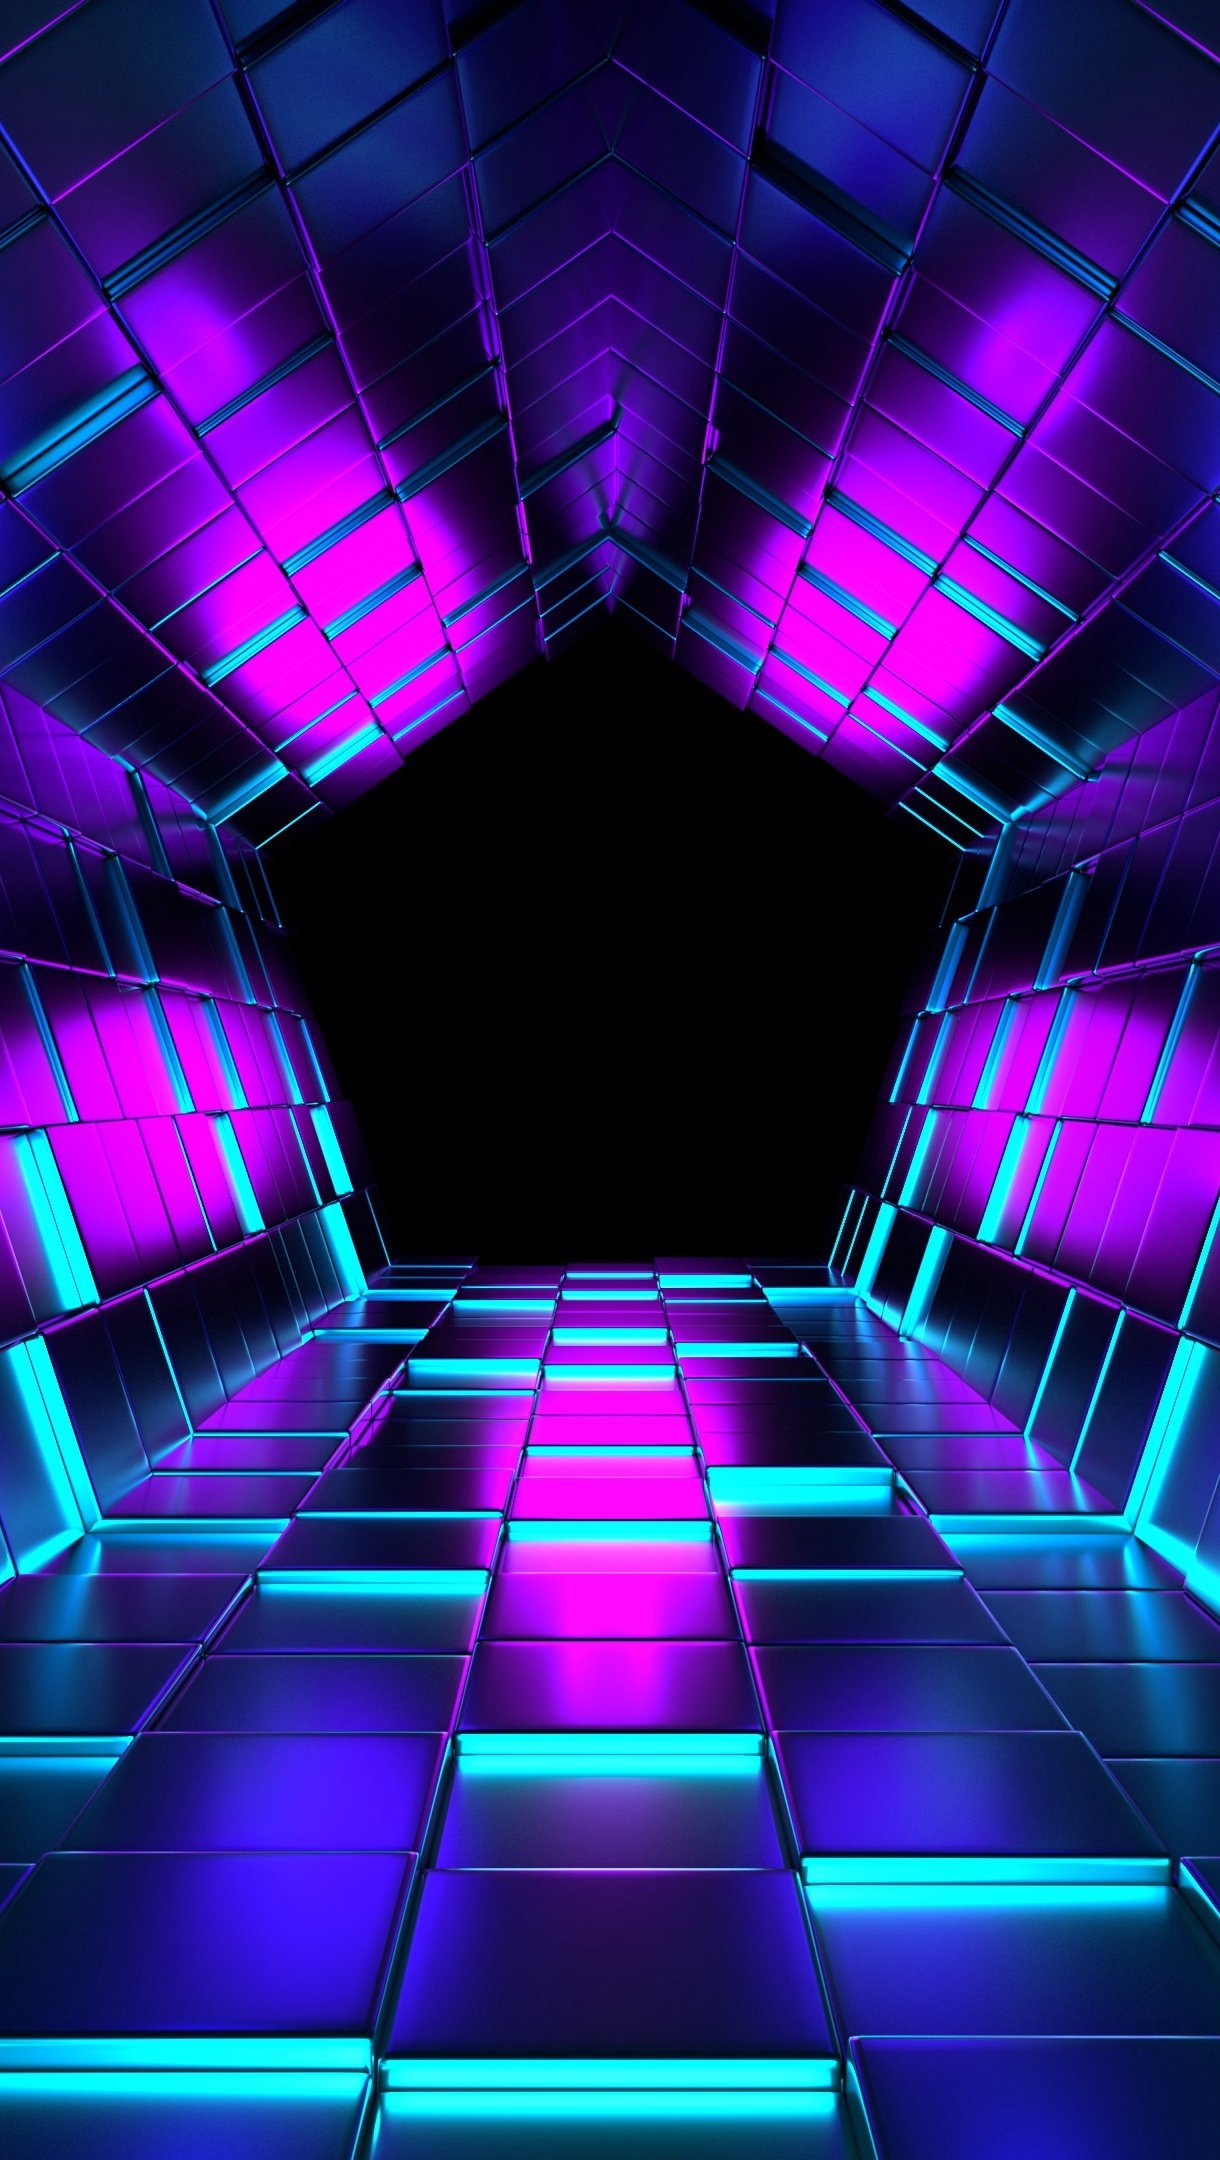 Pentagon tunnel with neón lights Wallpaper 4k Ultra HD